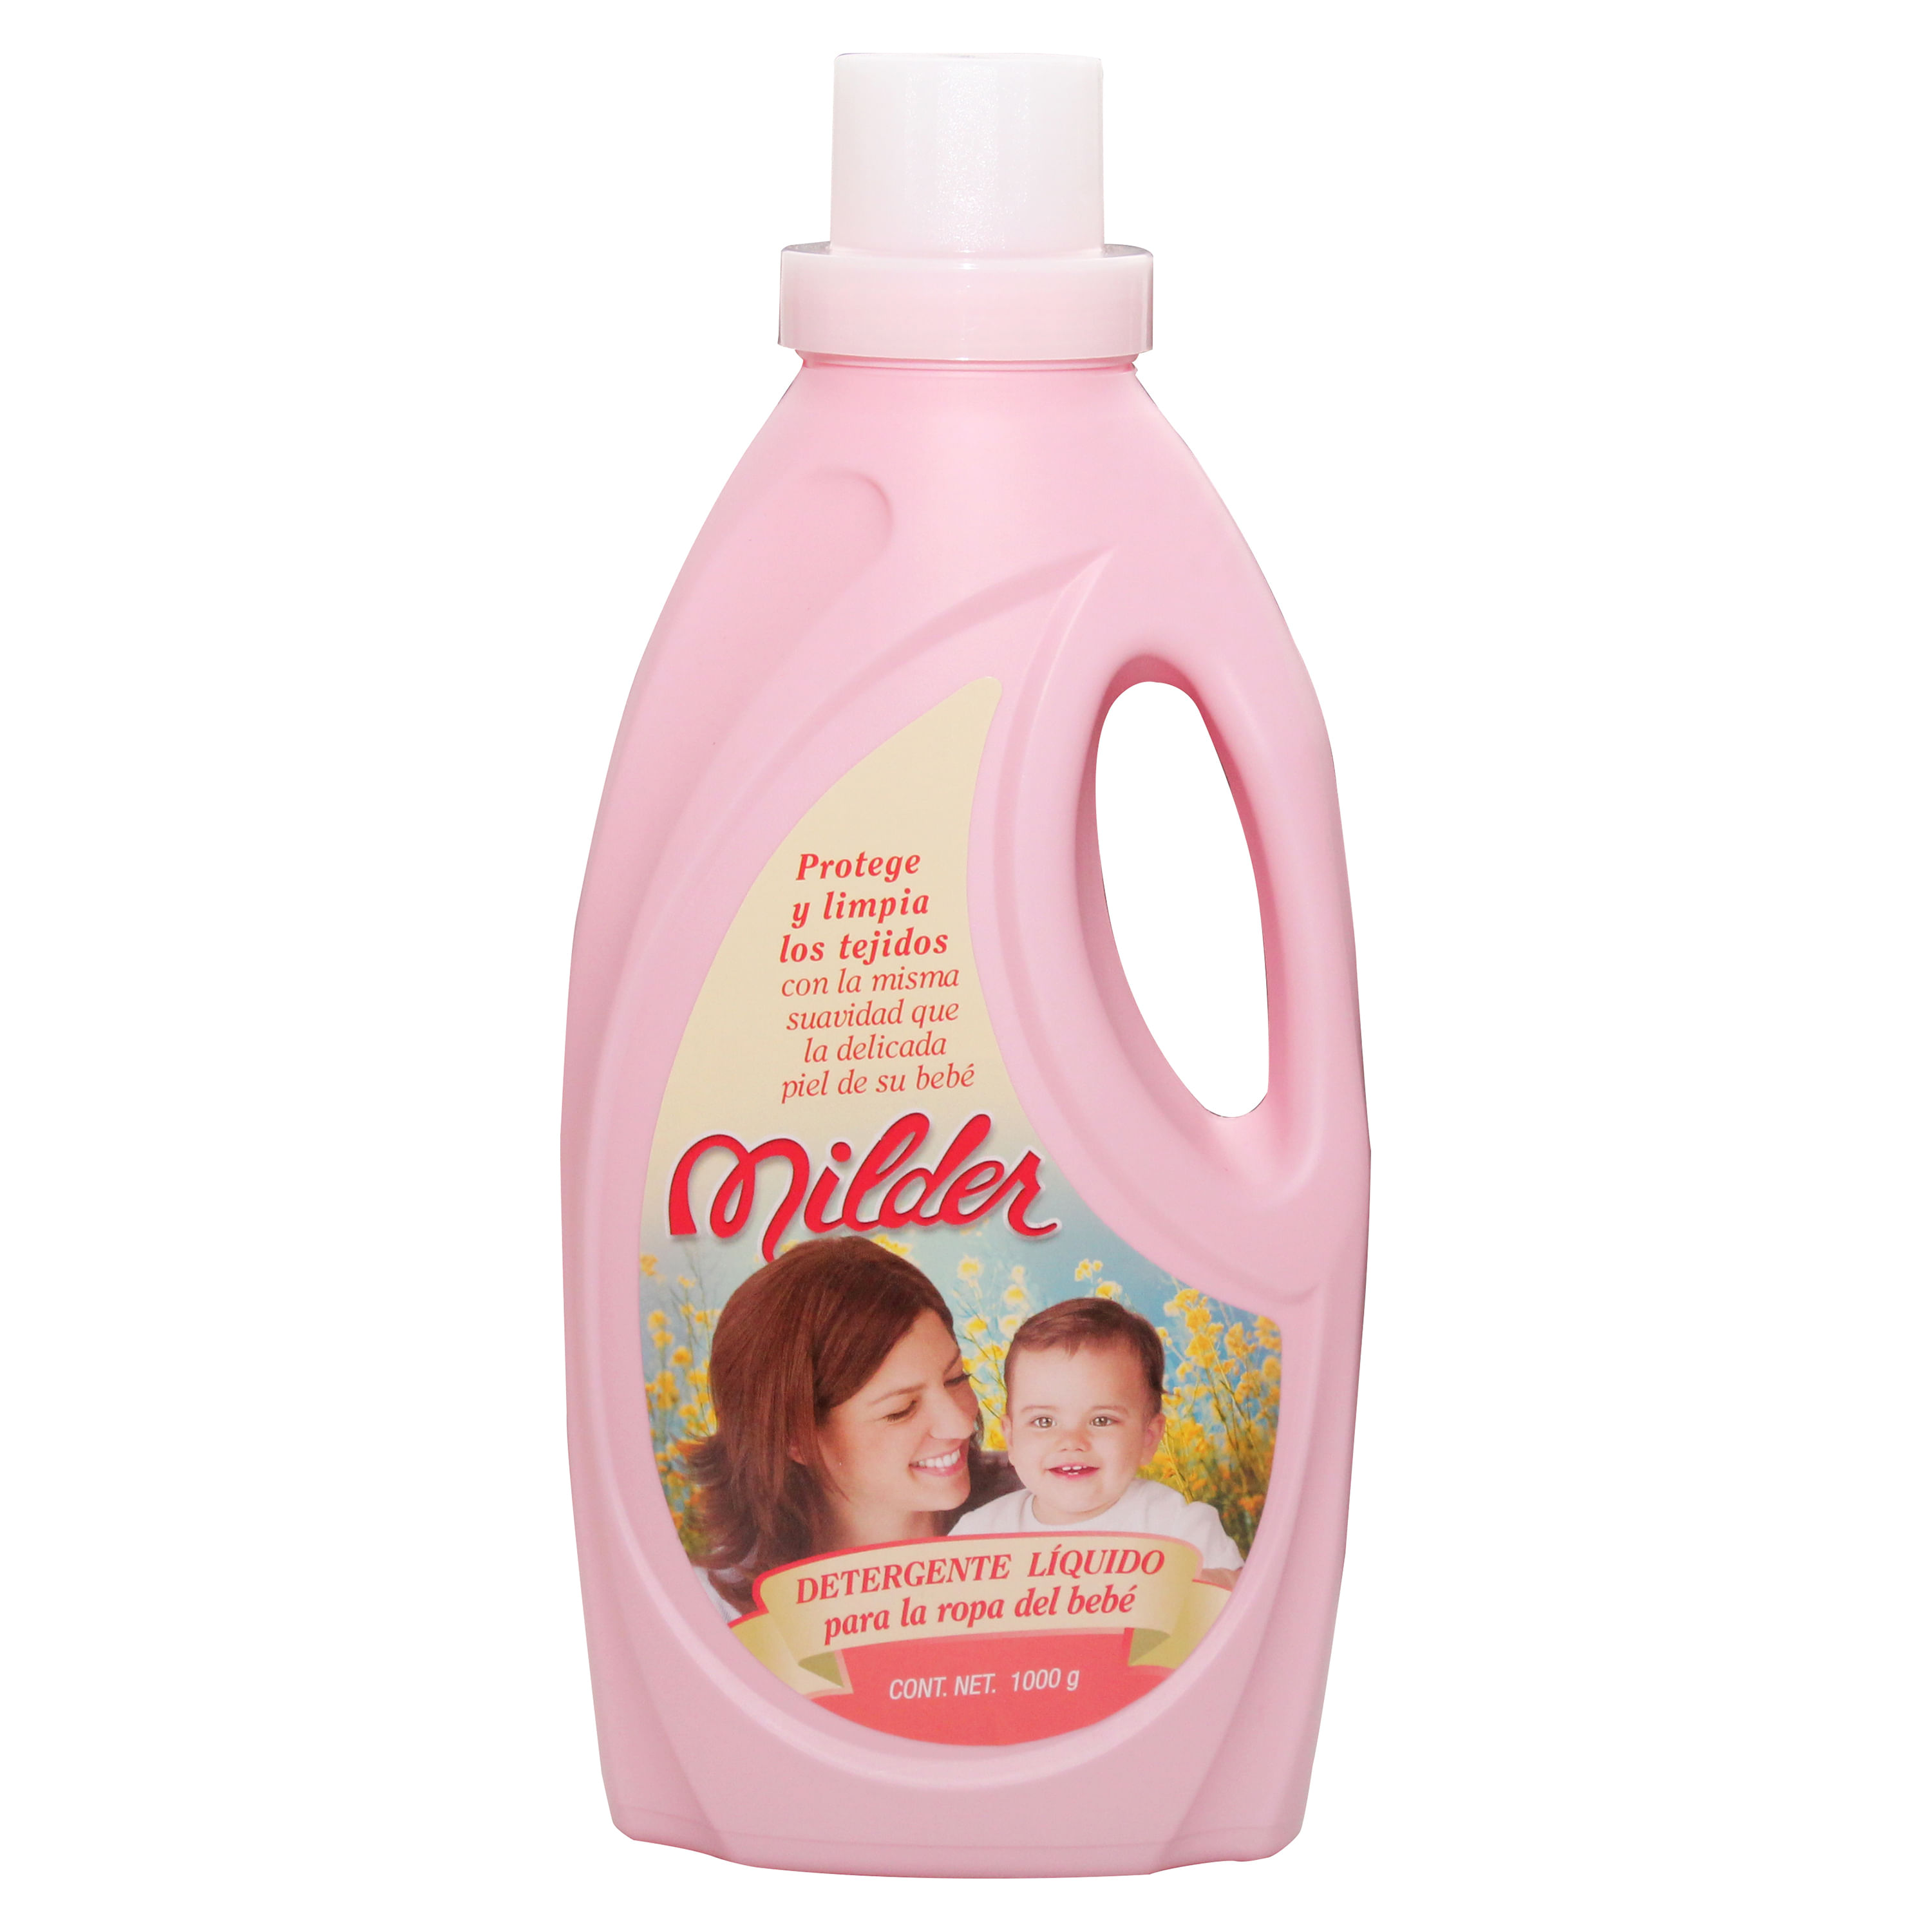 Comprar Detergente Liquido Milder Para Bebe - 1000Ml